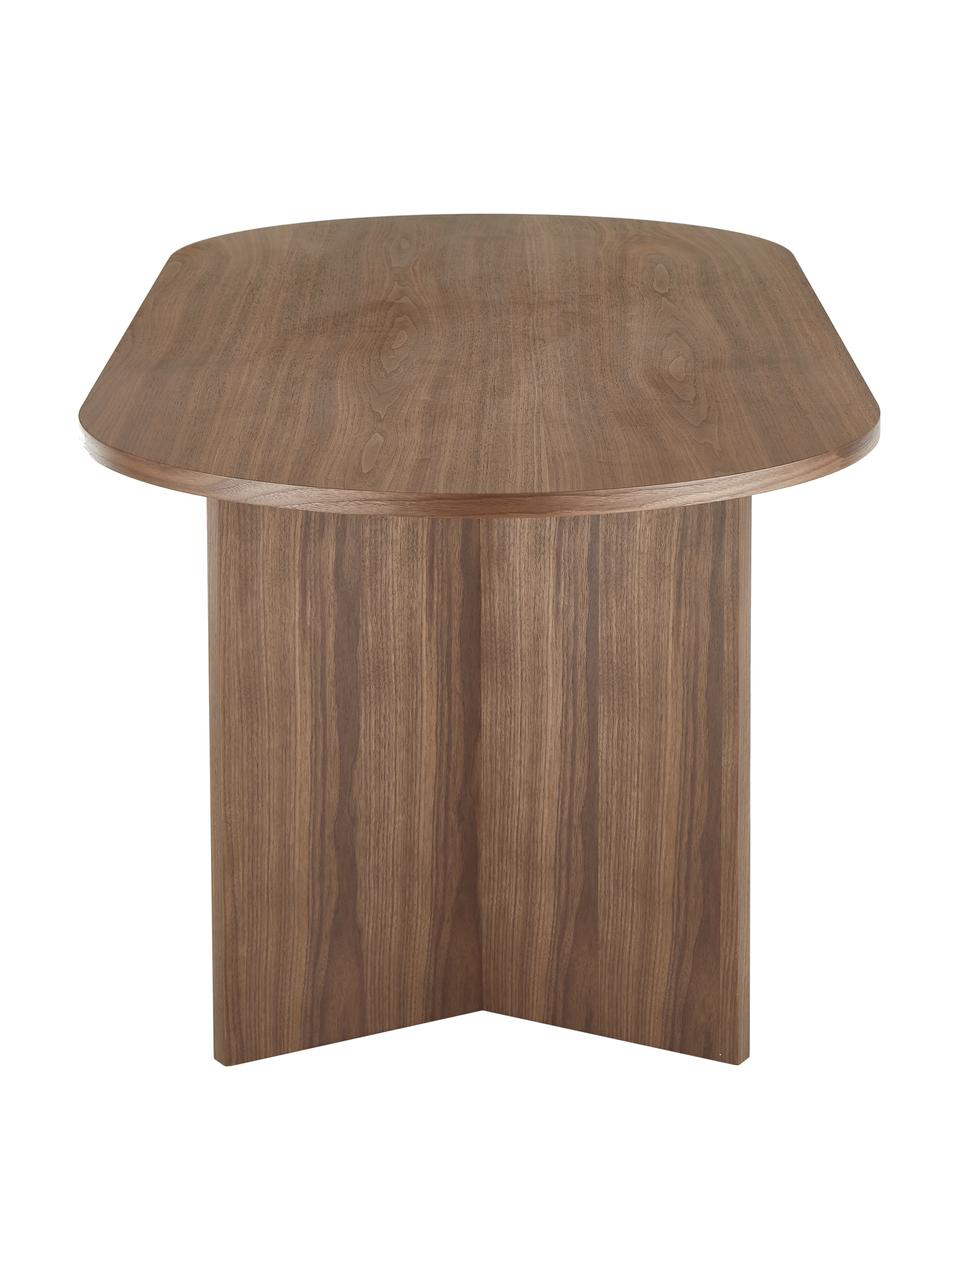 Table ovale en bois Toni, 200 x 90 cm, MDF avec placage en noyer, laqué, Bois de noyer, larg. 200 x prof. 90 cm